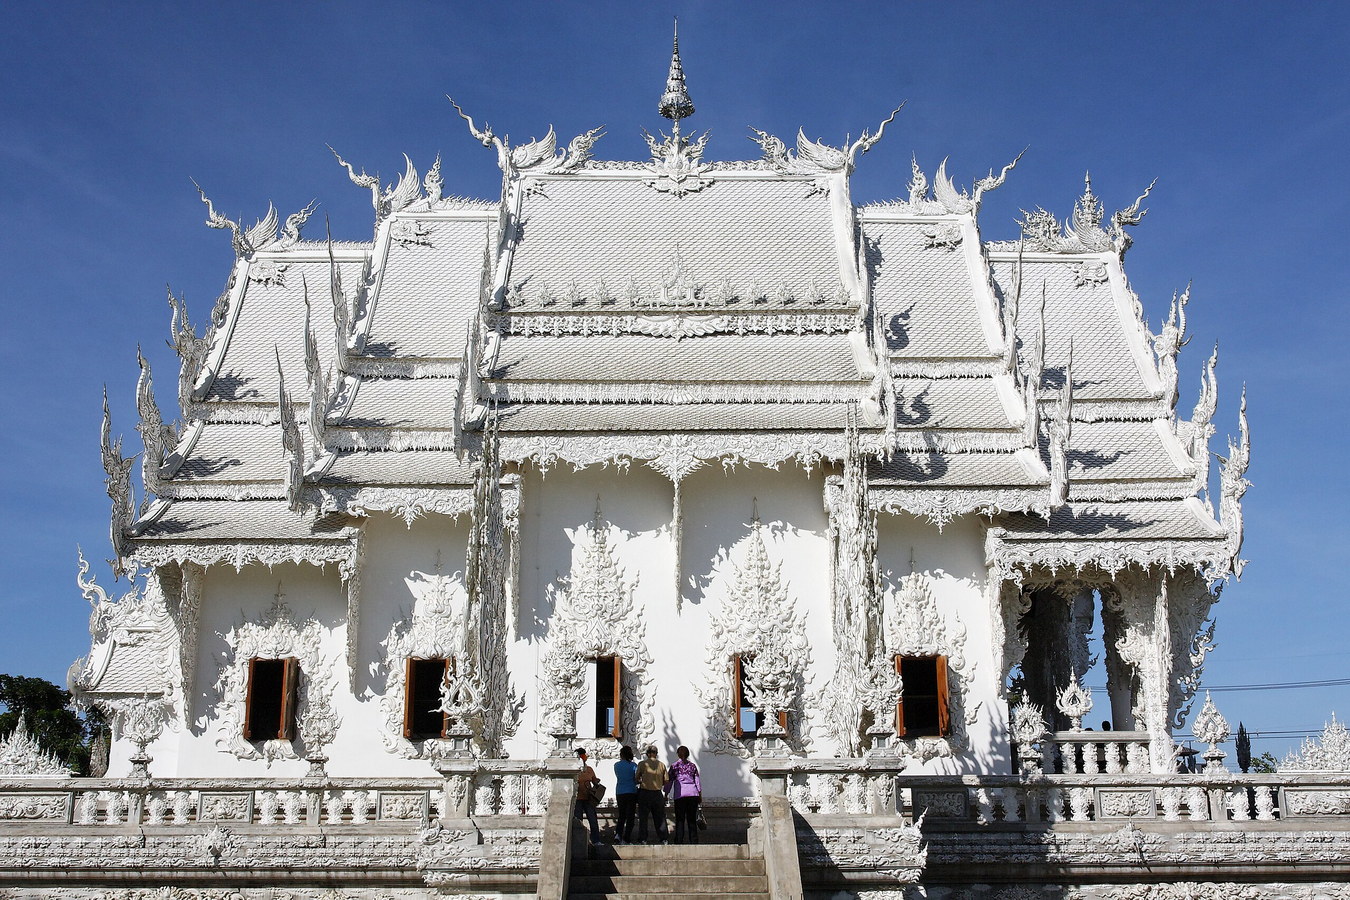 Chùm ảnh: Cảnh tượng siêu thực ở ngôi chùa trắng như tuyết